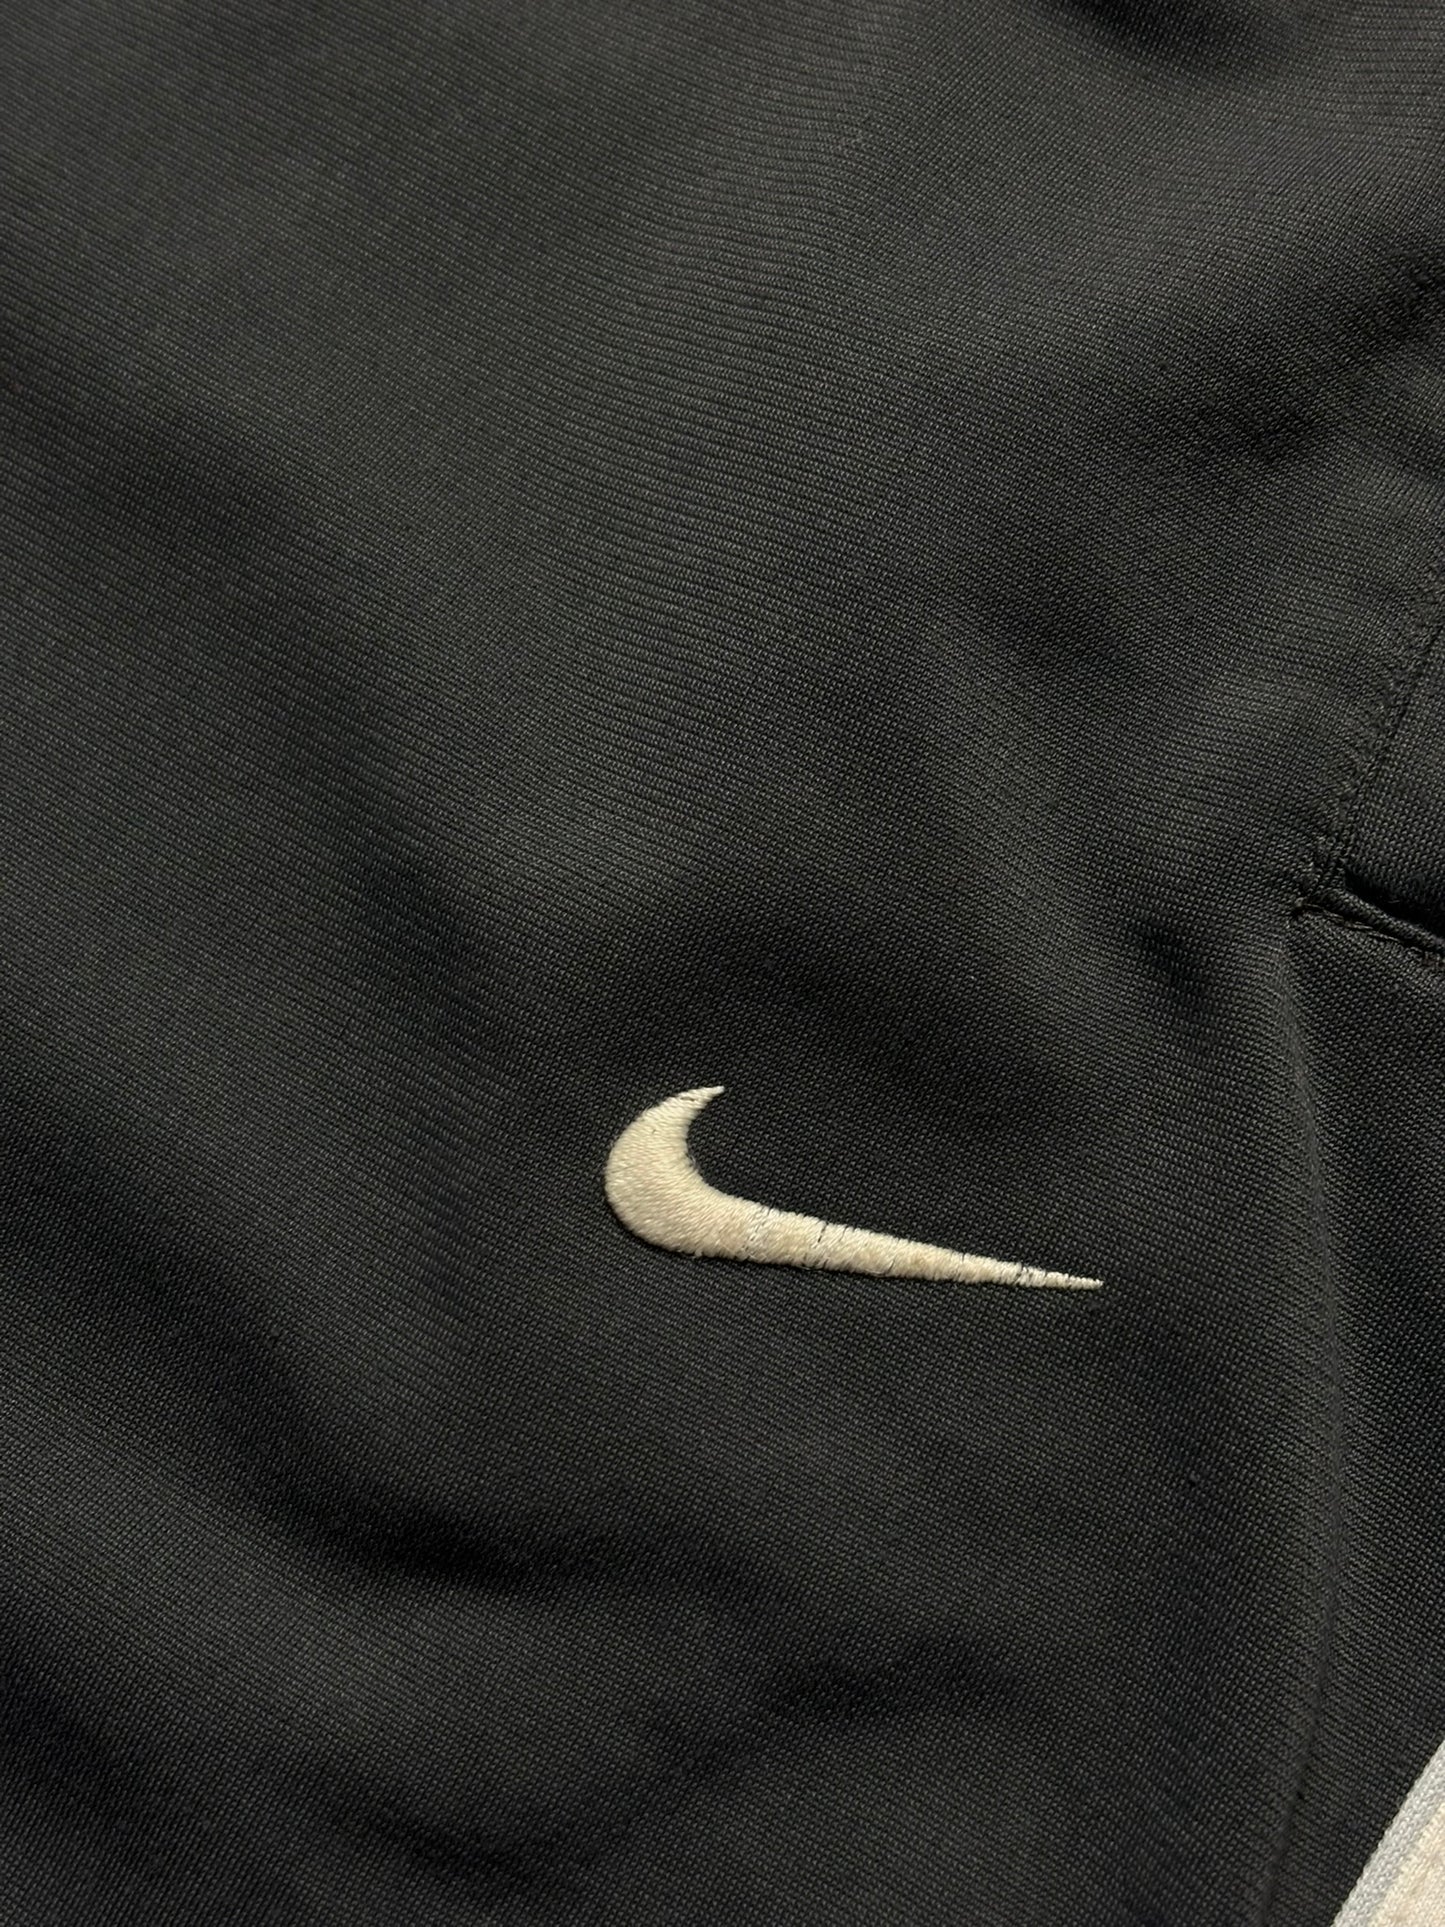 Chandal Nike retro 00s logo bordado - XL